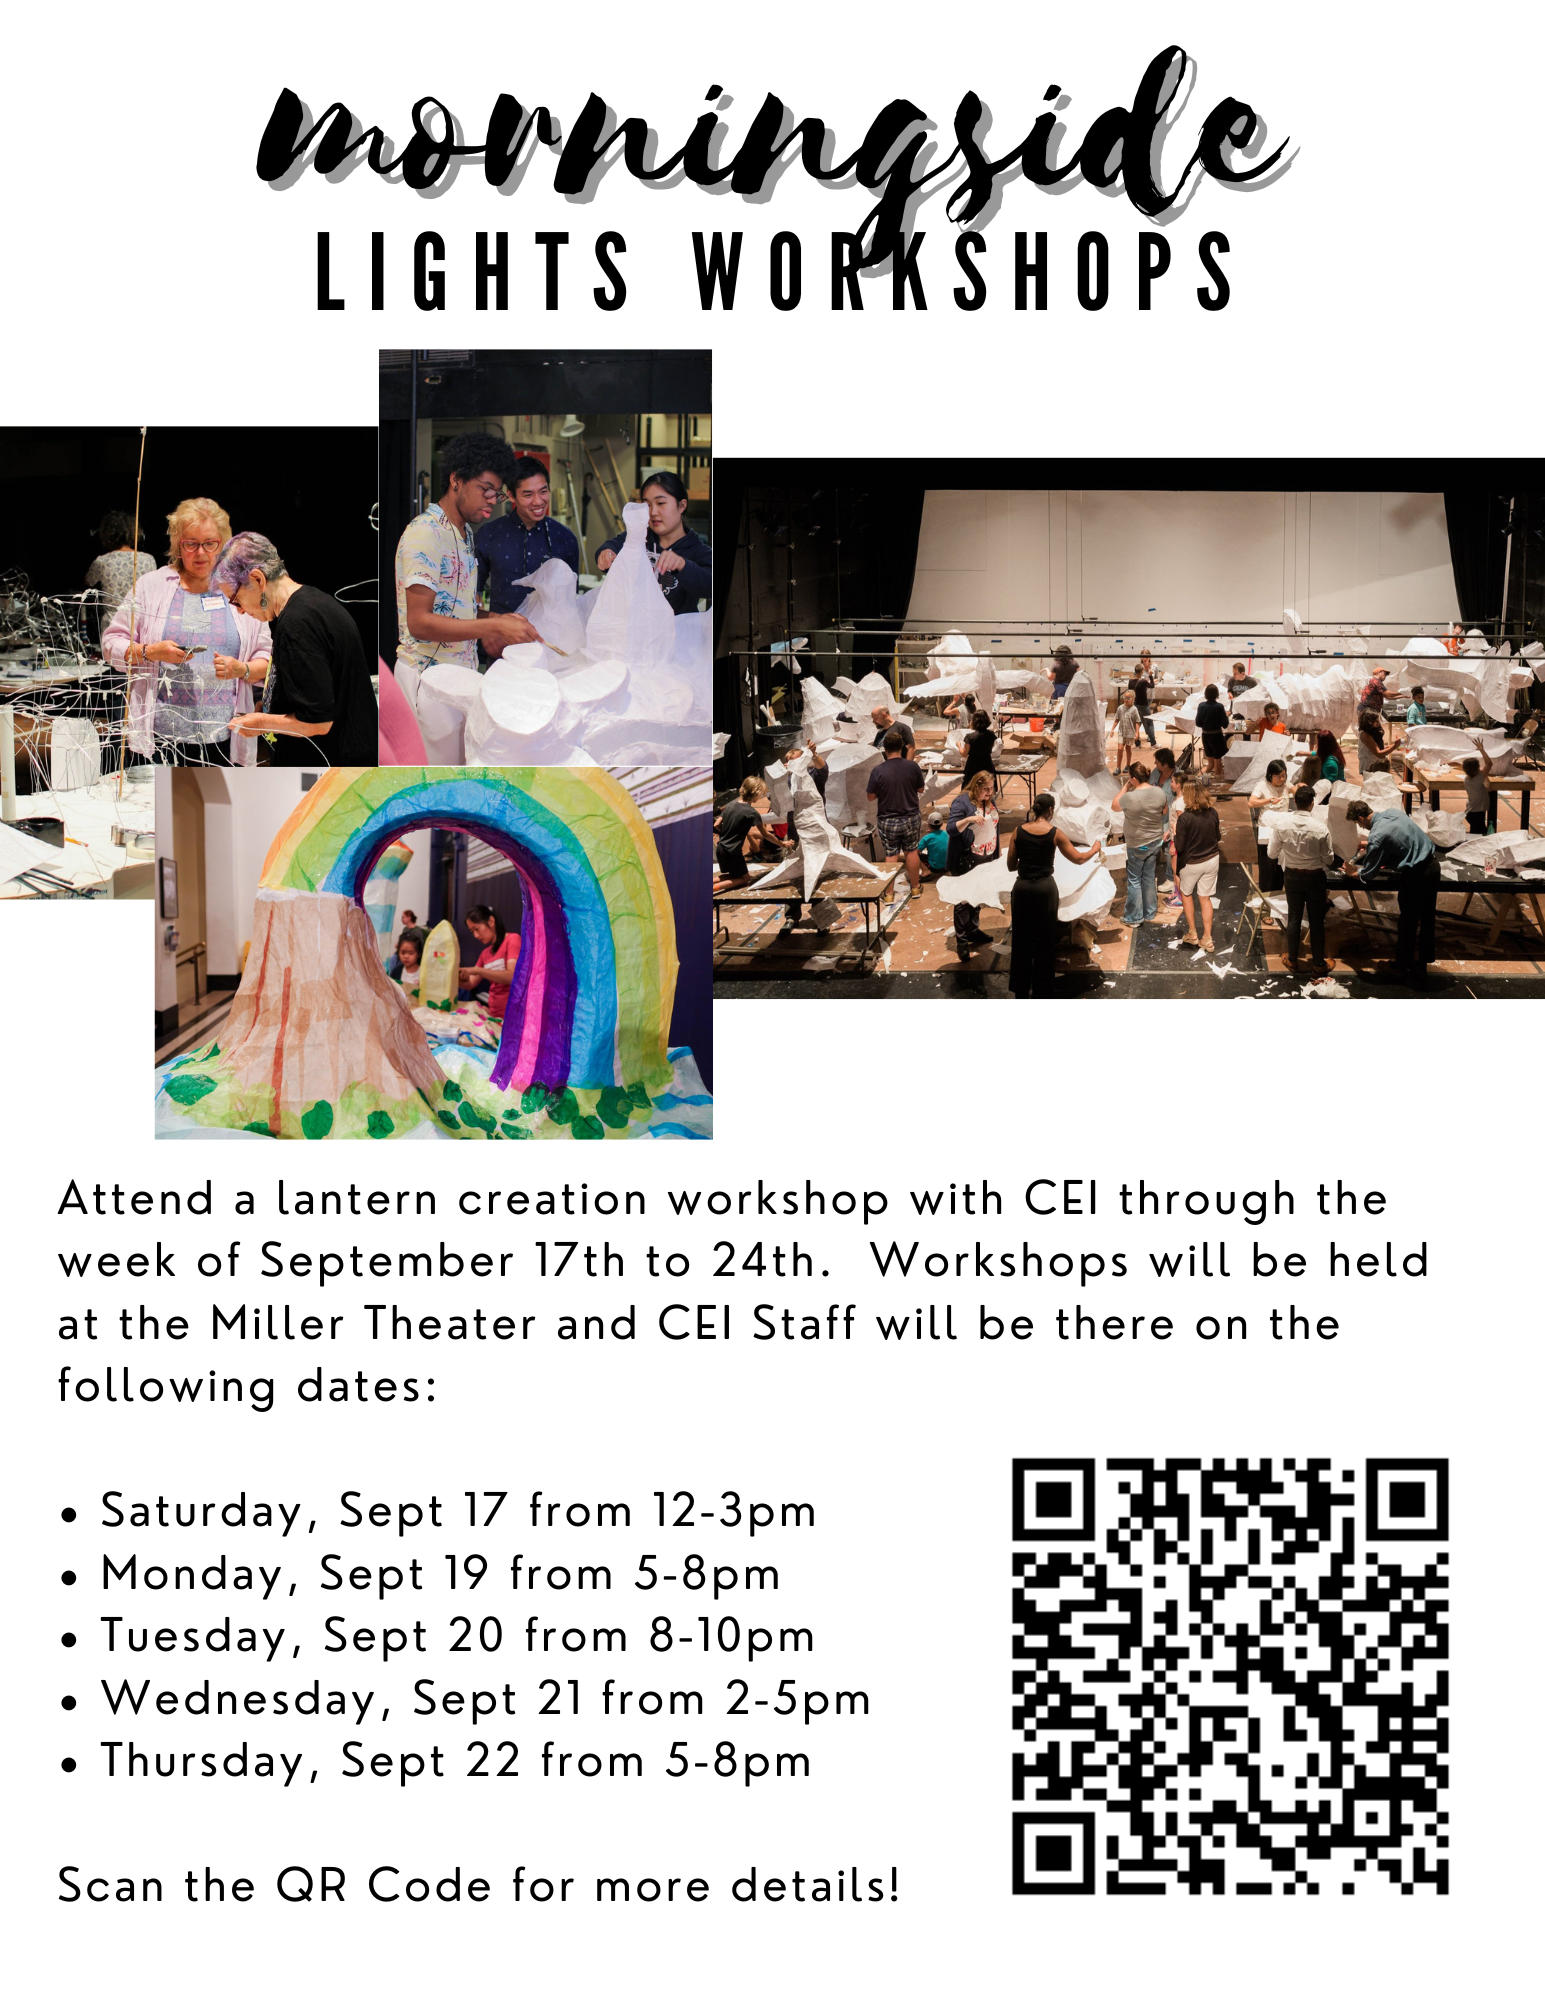 morningside workshop lights event info 